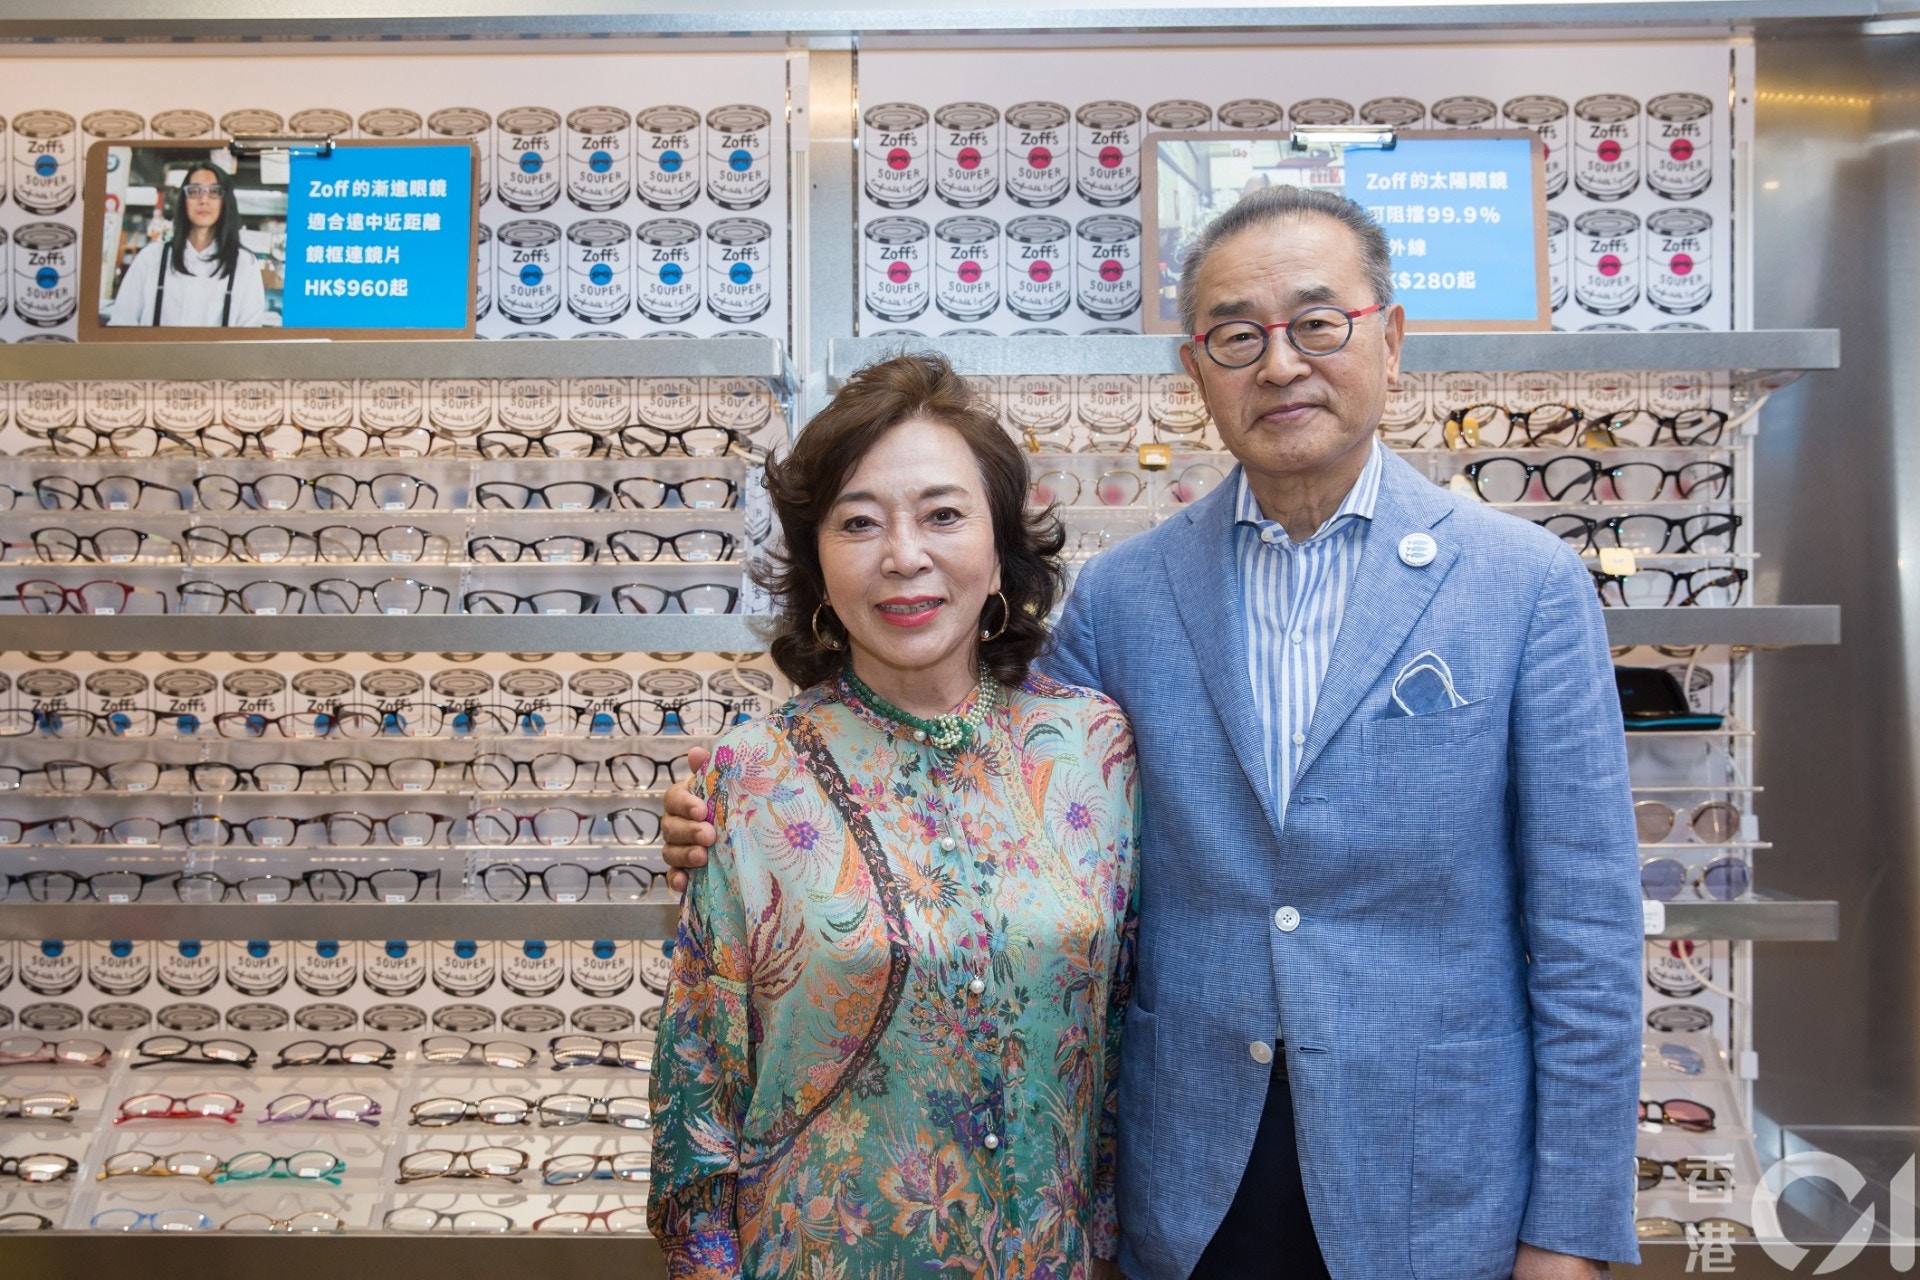 60歲創業建眼鏡王國Zoff經營之神打破行規棄「日本製造」